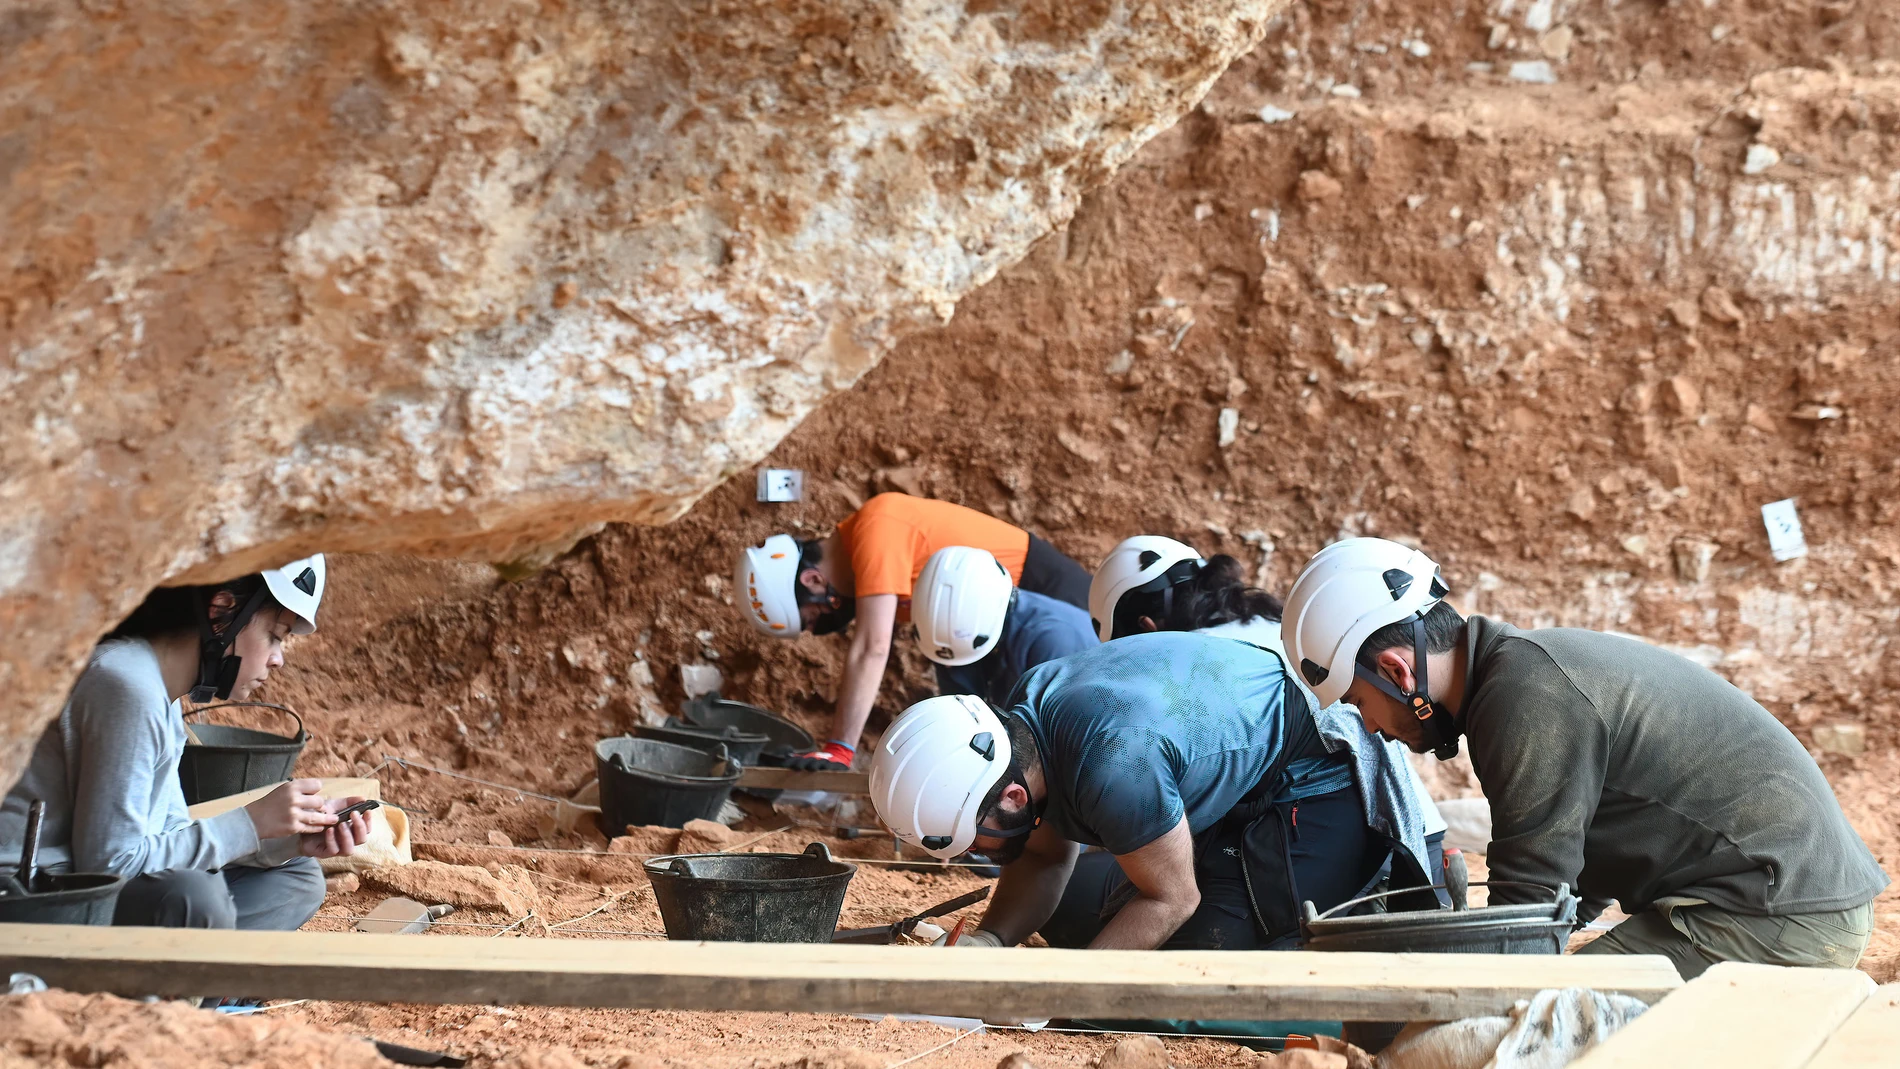 La campaña de excavaciones en Atapuerca, que aún está en su ecuador y seguirá hasta final de mes, ha dado ya su primera sorpresa con el hallazgo de un nuevo nivel en el yacimiento de Elefante